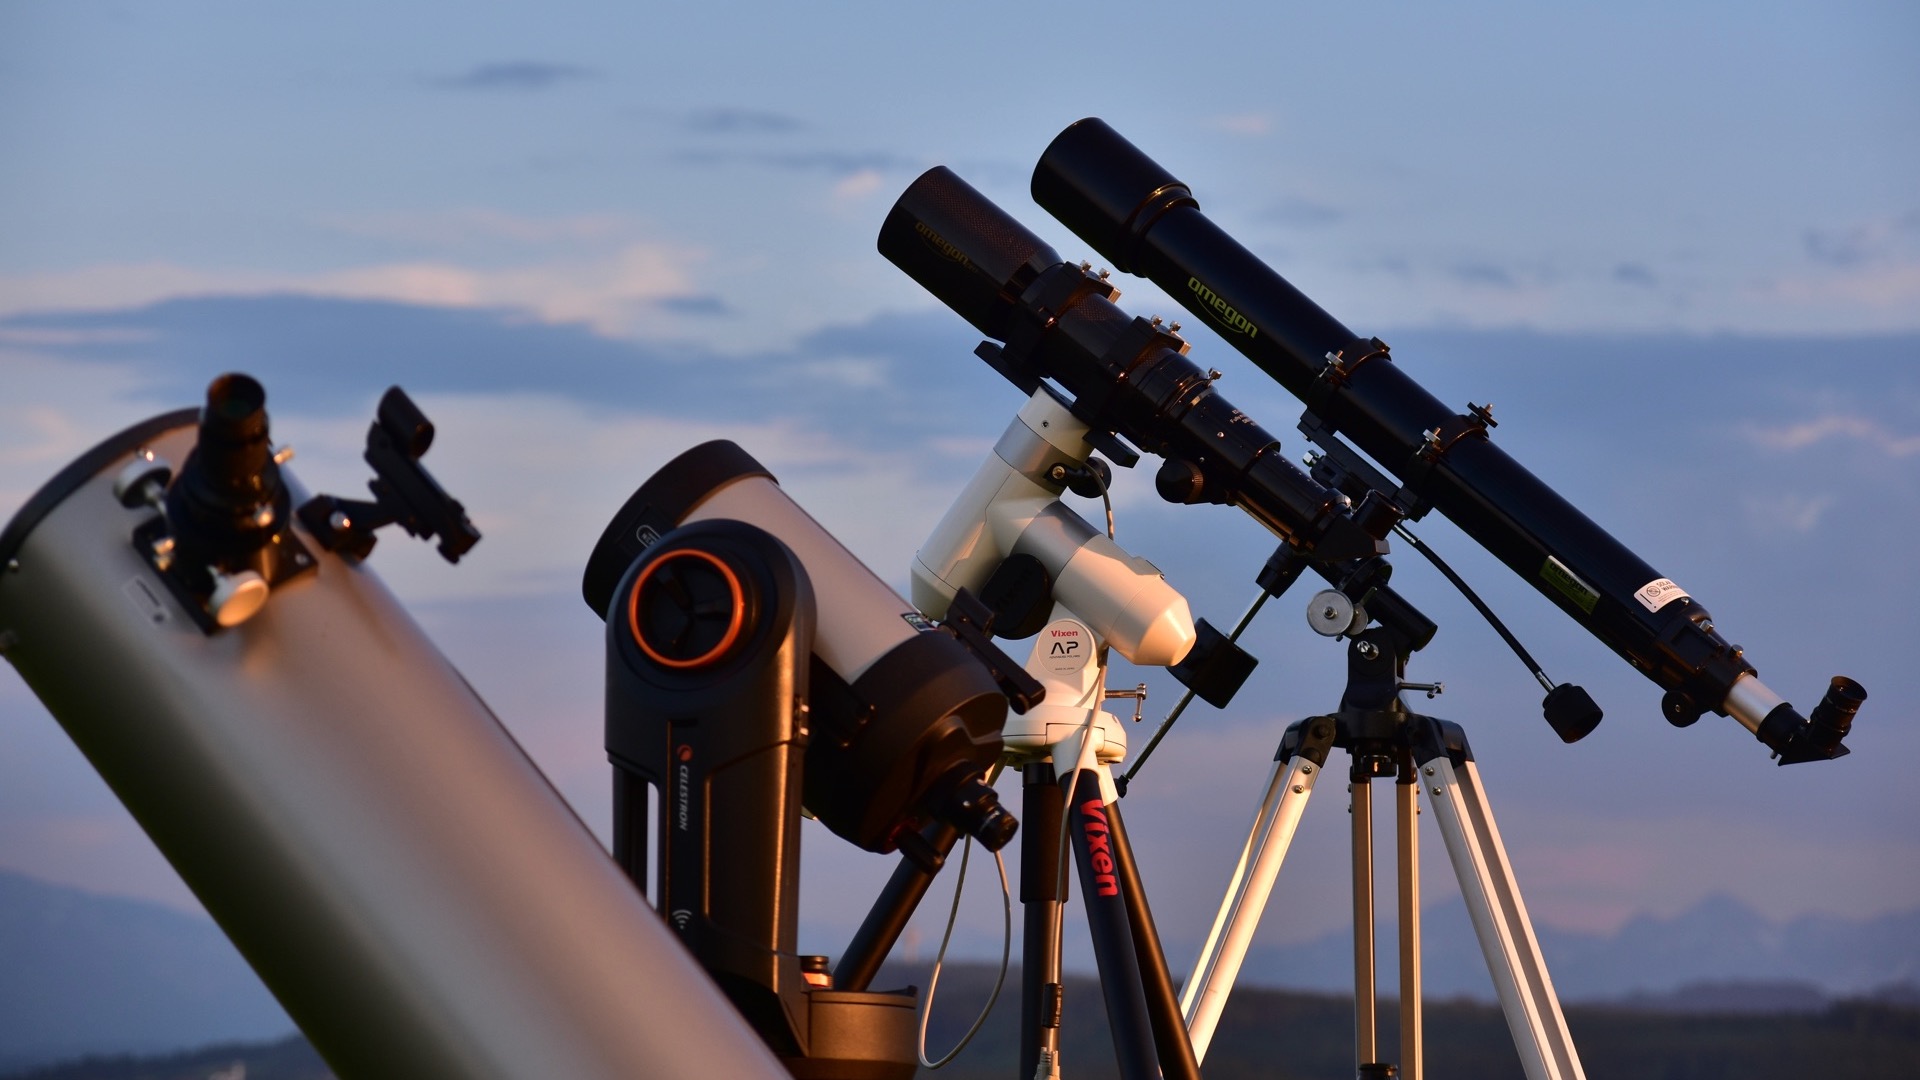 Debutanții în astronomie au de ales între un număr foarte mare de modele de telescoape, ceea ce îi poate dezorienta. Experții aduc rapid lumină în întuneric.